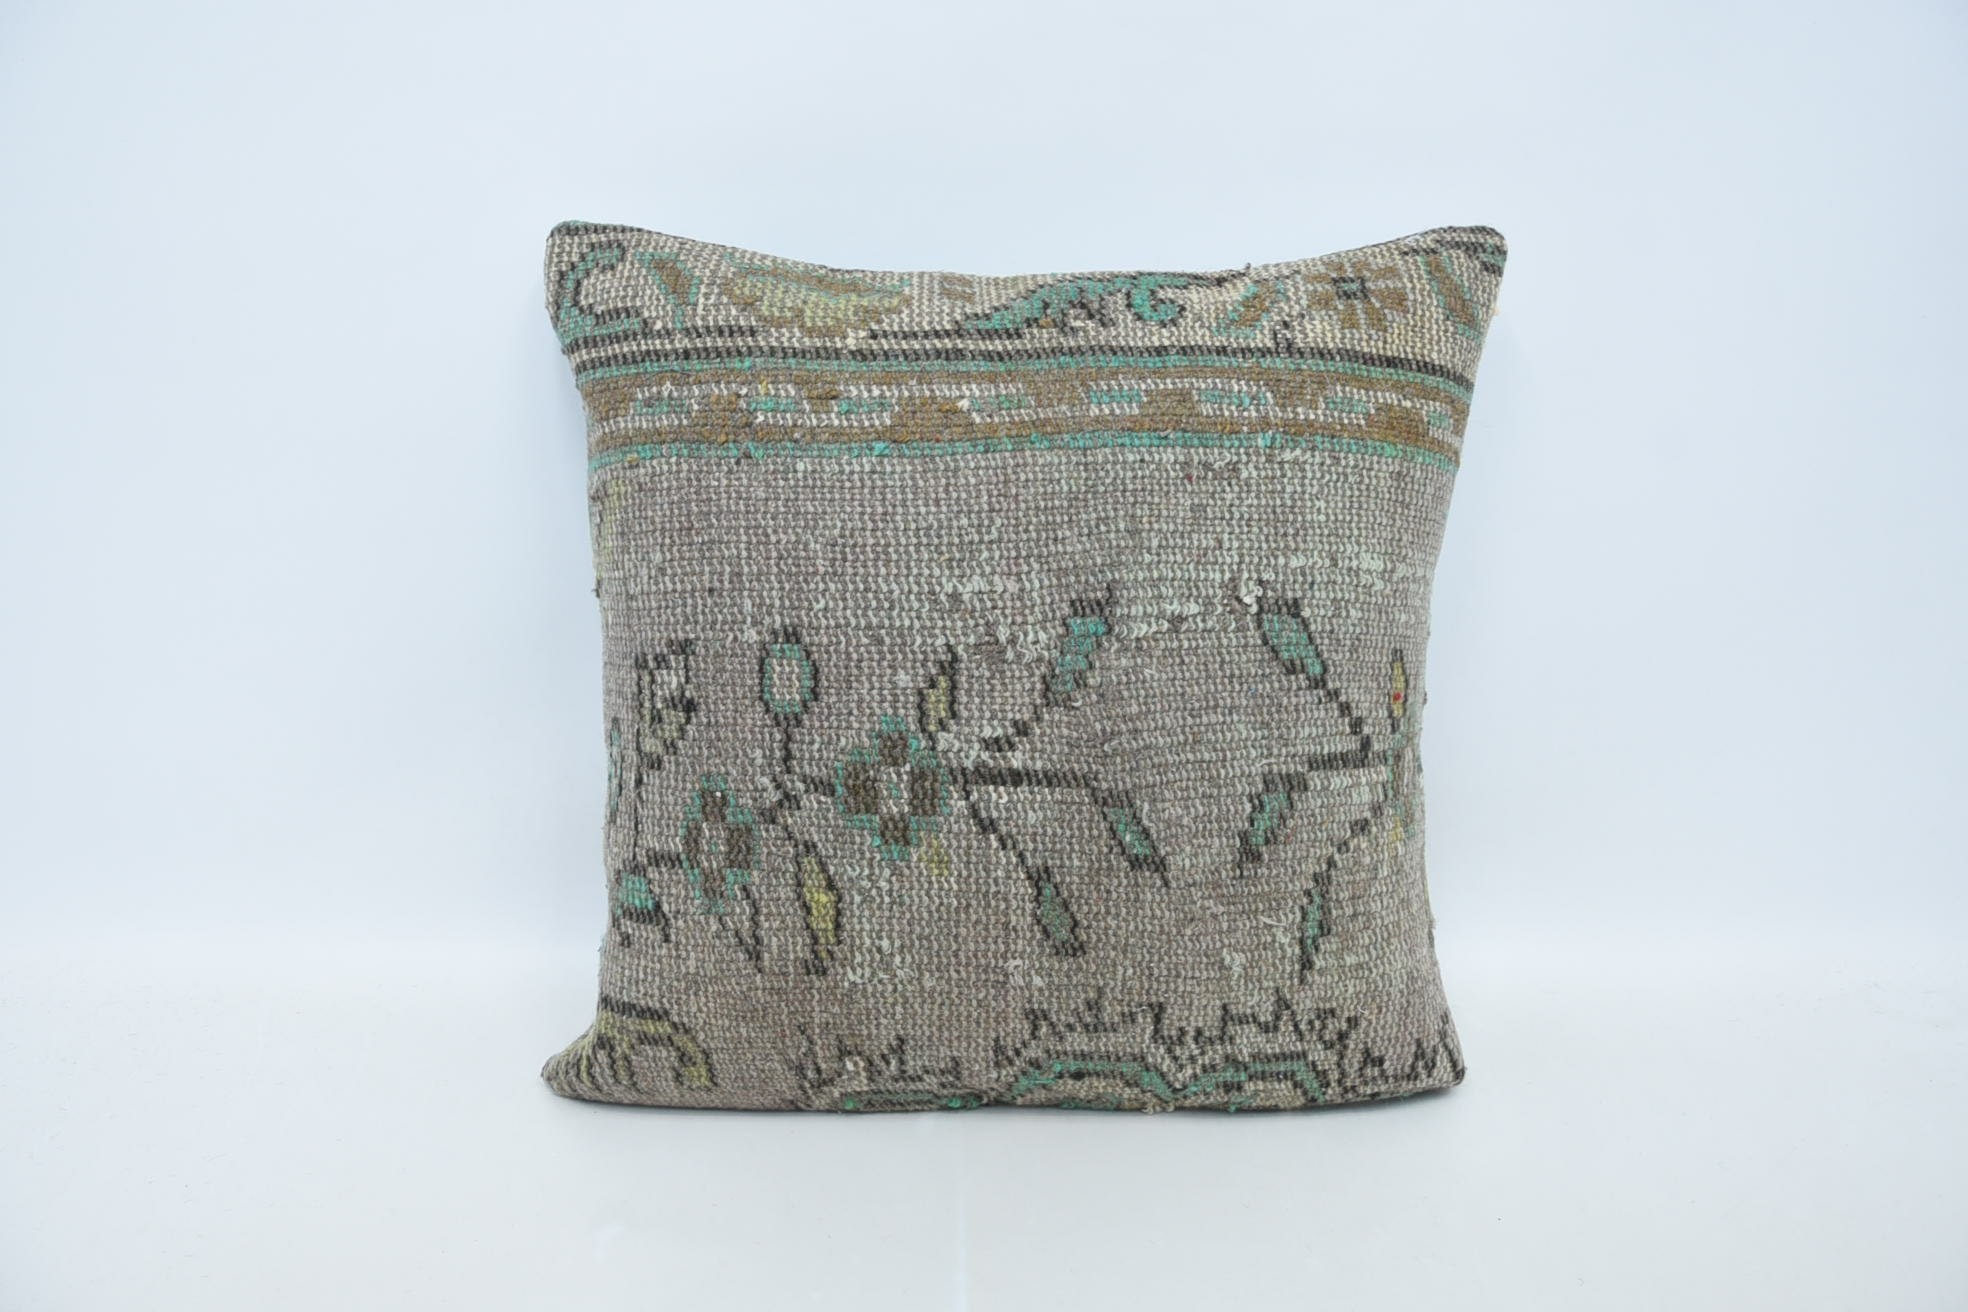 Vintage Kilim Pillow, Handwoven Cushion, Handmade Kilim Cushion, Vintage Kilim Throw Pillow, 24"x24" Beige Pillow Sham, Art Deco Cushion